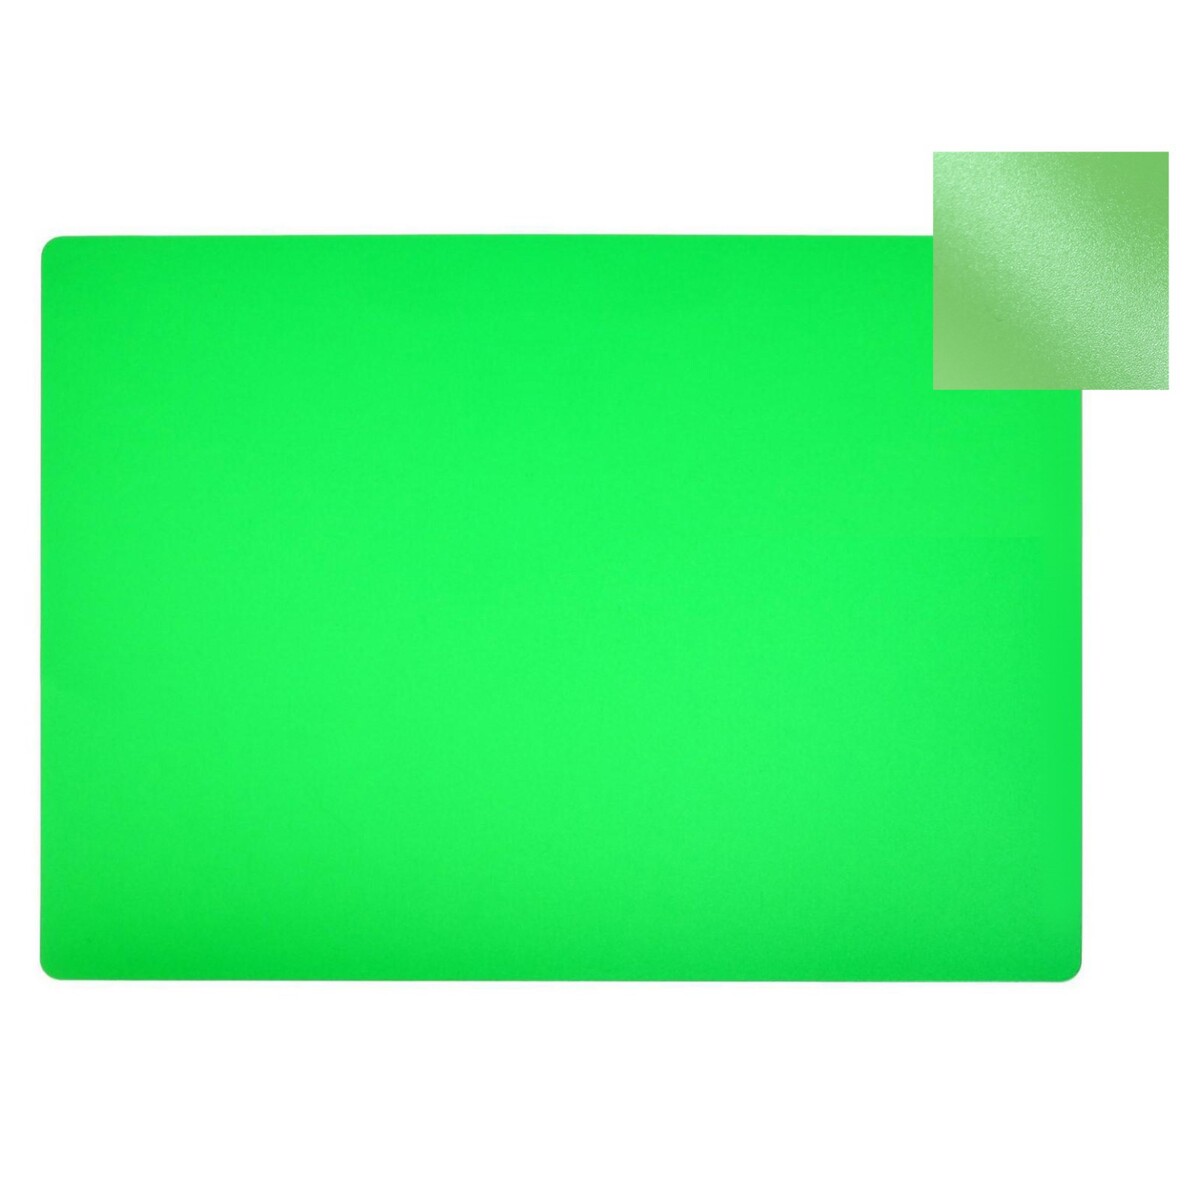 Накладка на стол пластиковая а4, 339 х 244 мм, 500 мкм, прозрачная, салатовая (подходит для офиса) визитница пластиковая металлическая с отделениями внутри зеленая